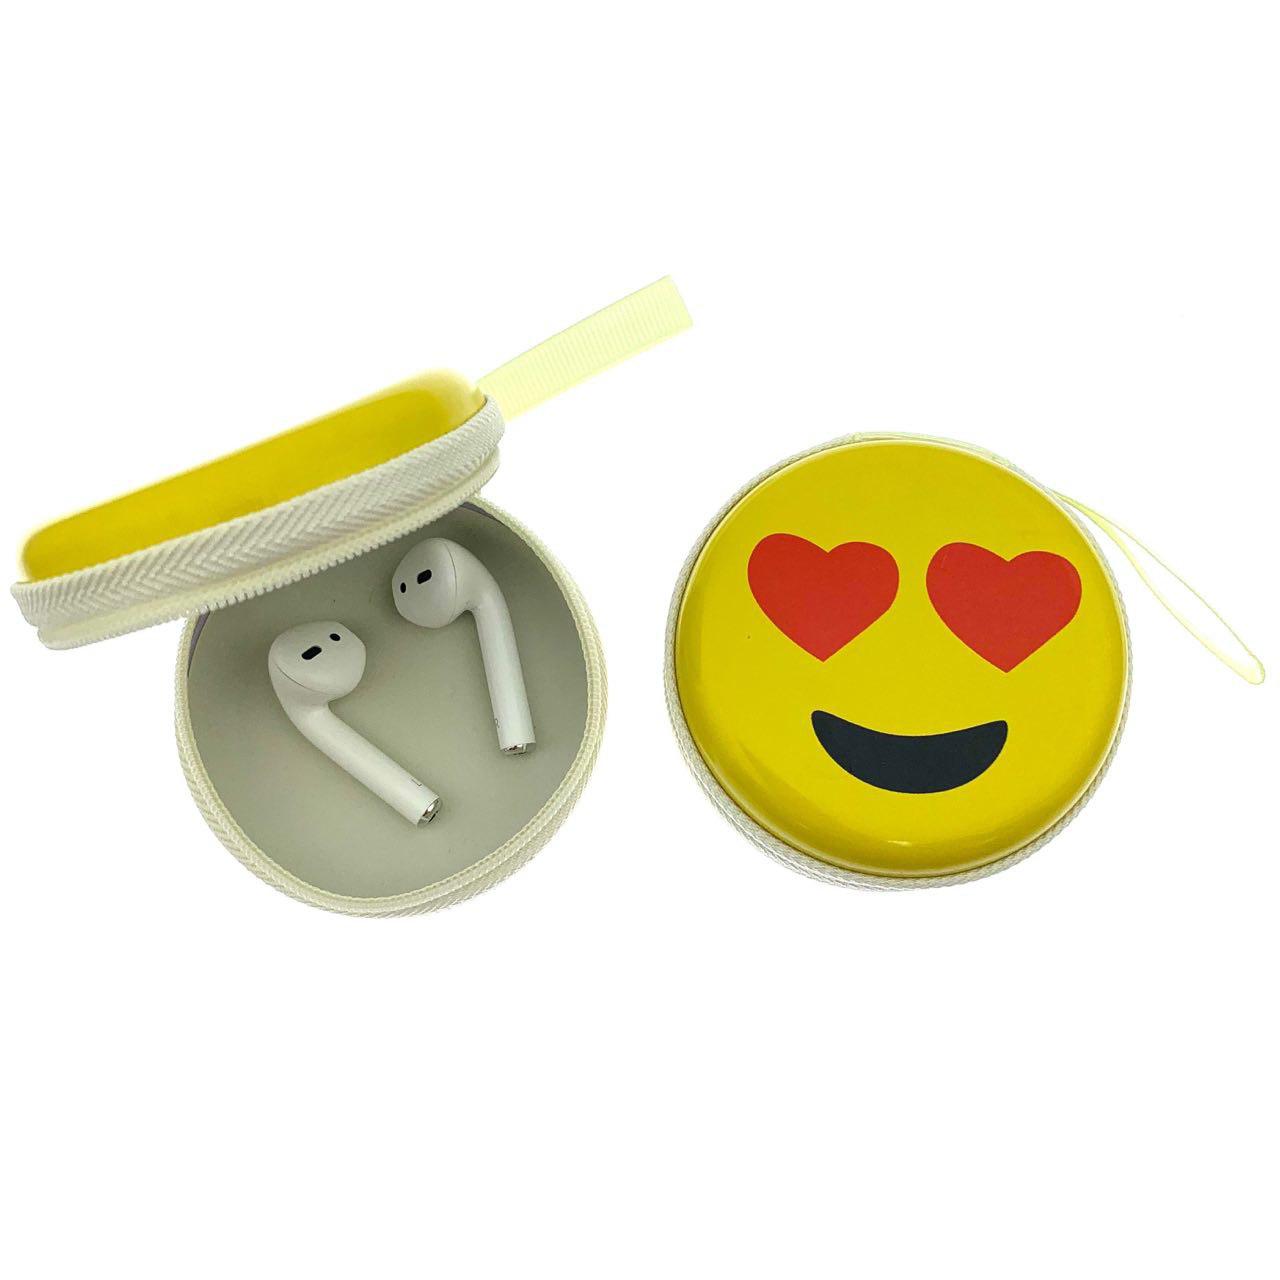 Футляр-кейс для хранения мелочи или наушников на замочке, основа металл, рисунок Смайлик Smiling Face With Heart-Eyes.